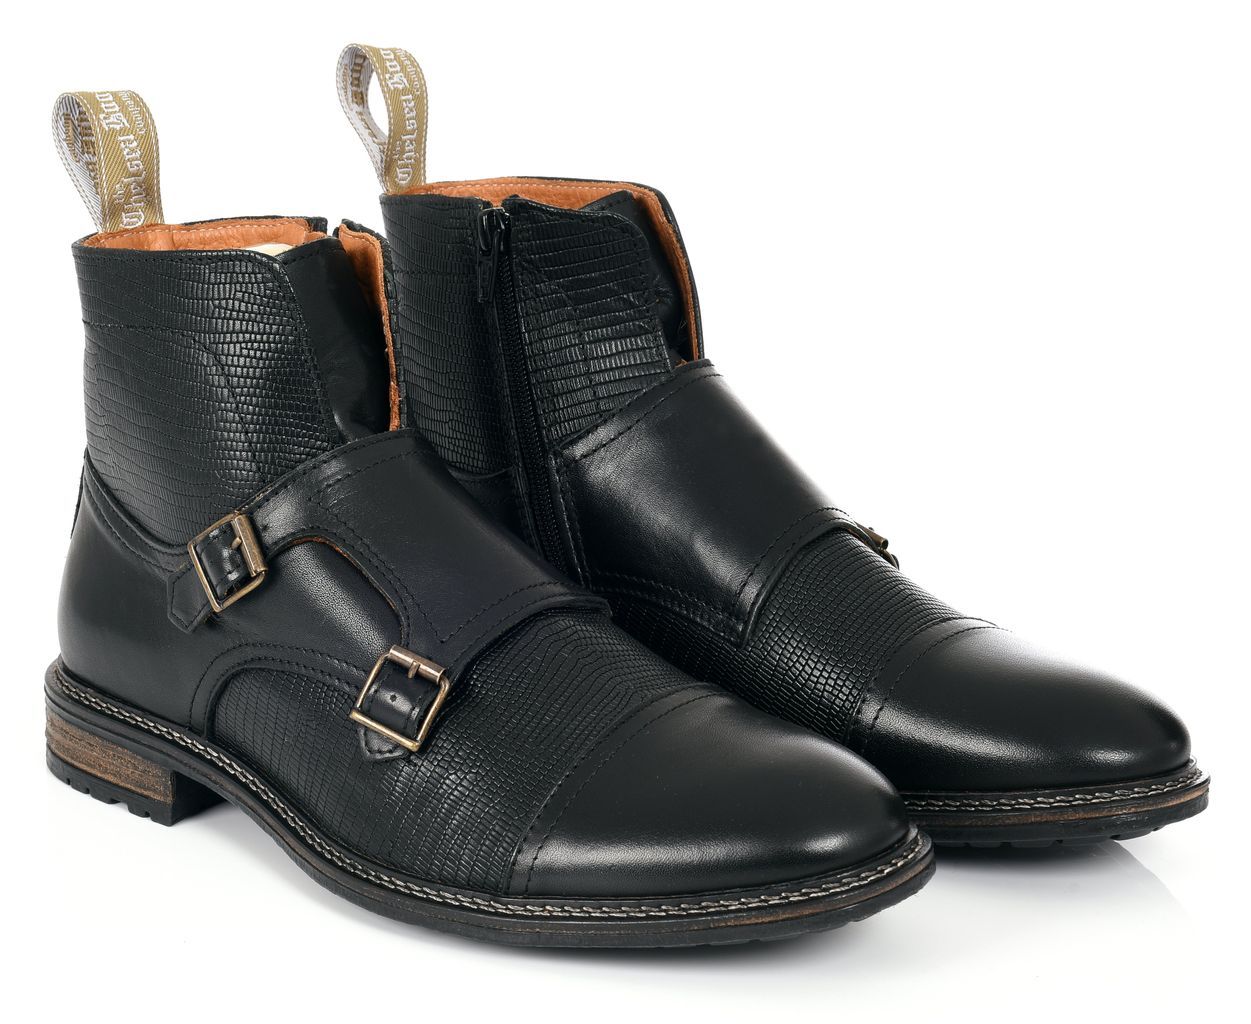 Men's Double Buckle - Black 7 Uk The Chelsea Boot Co Est. 1851